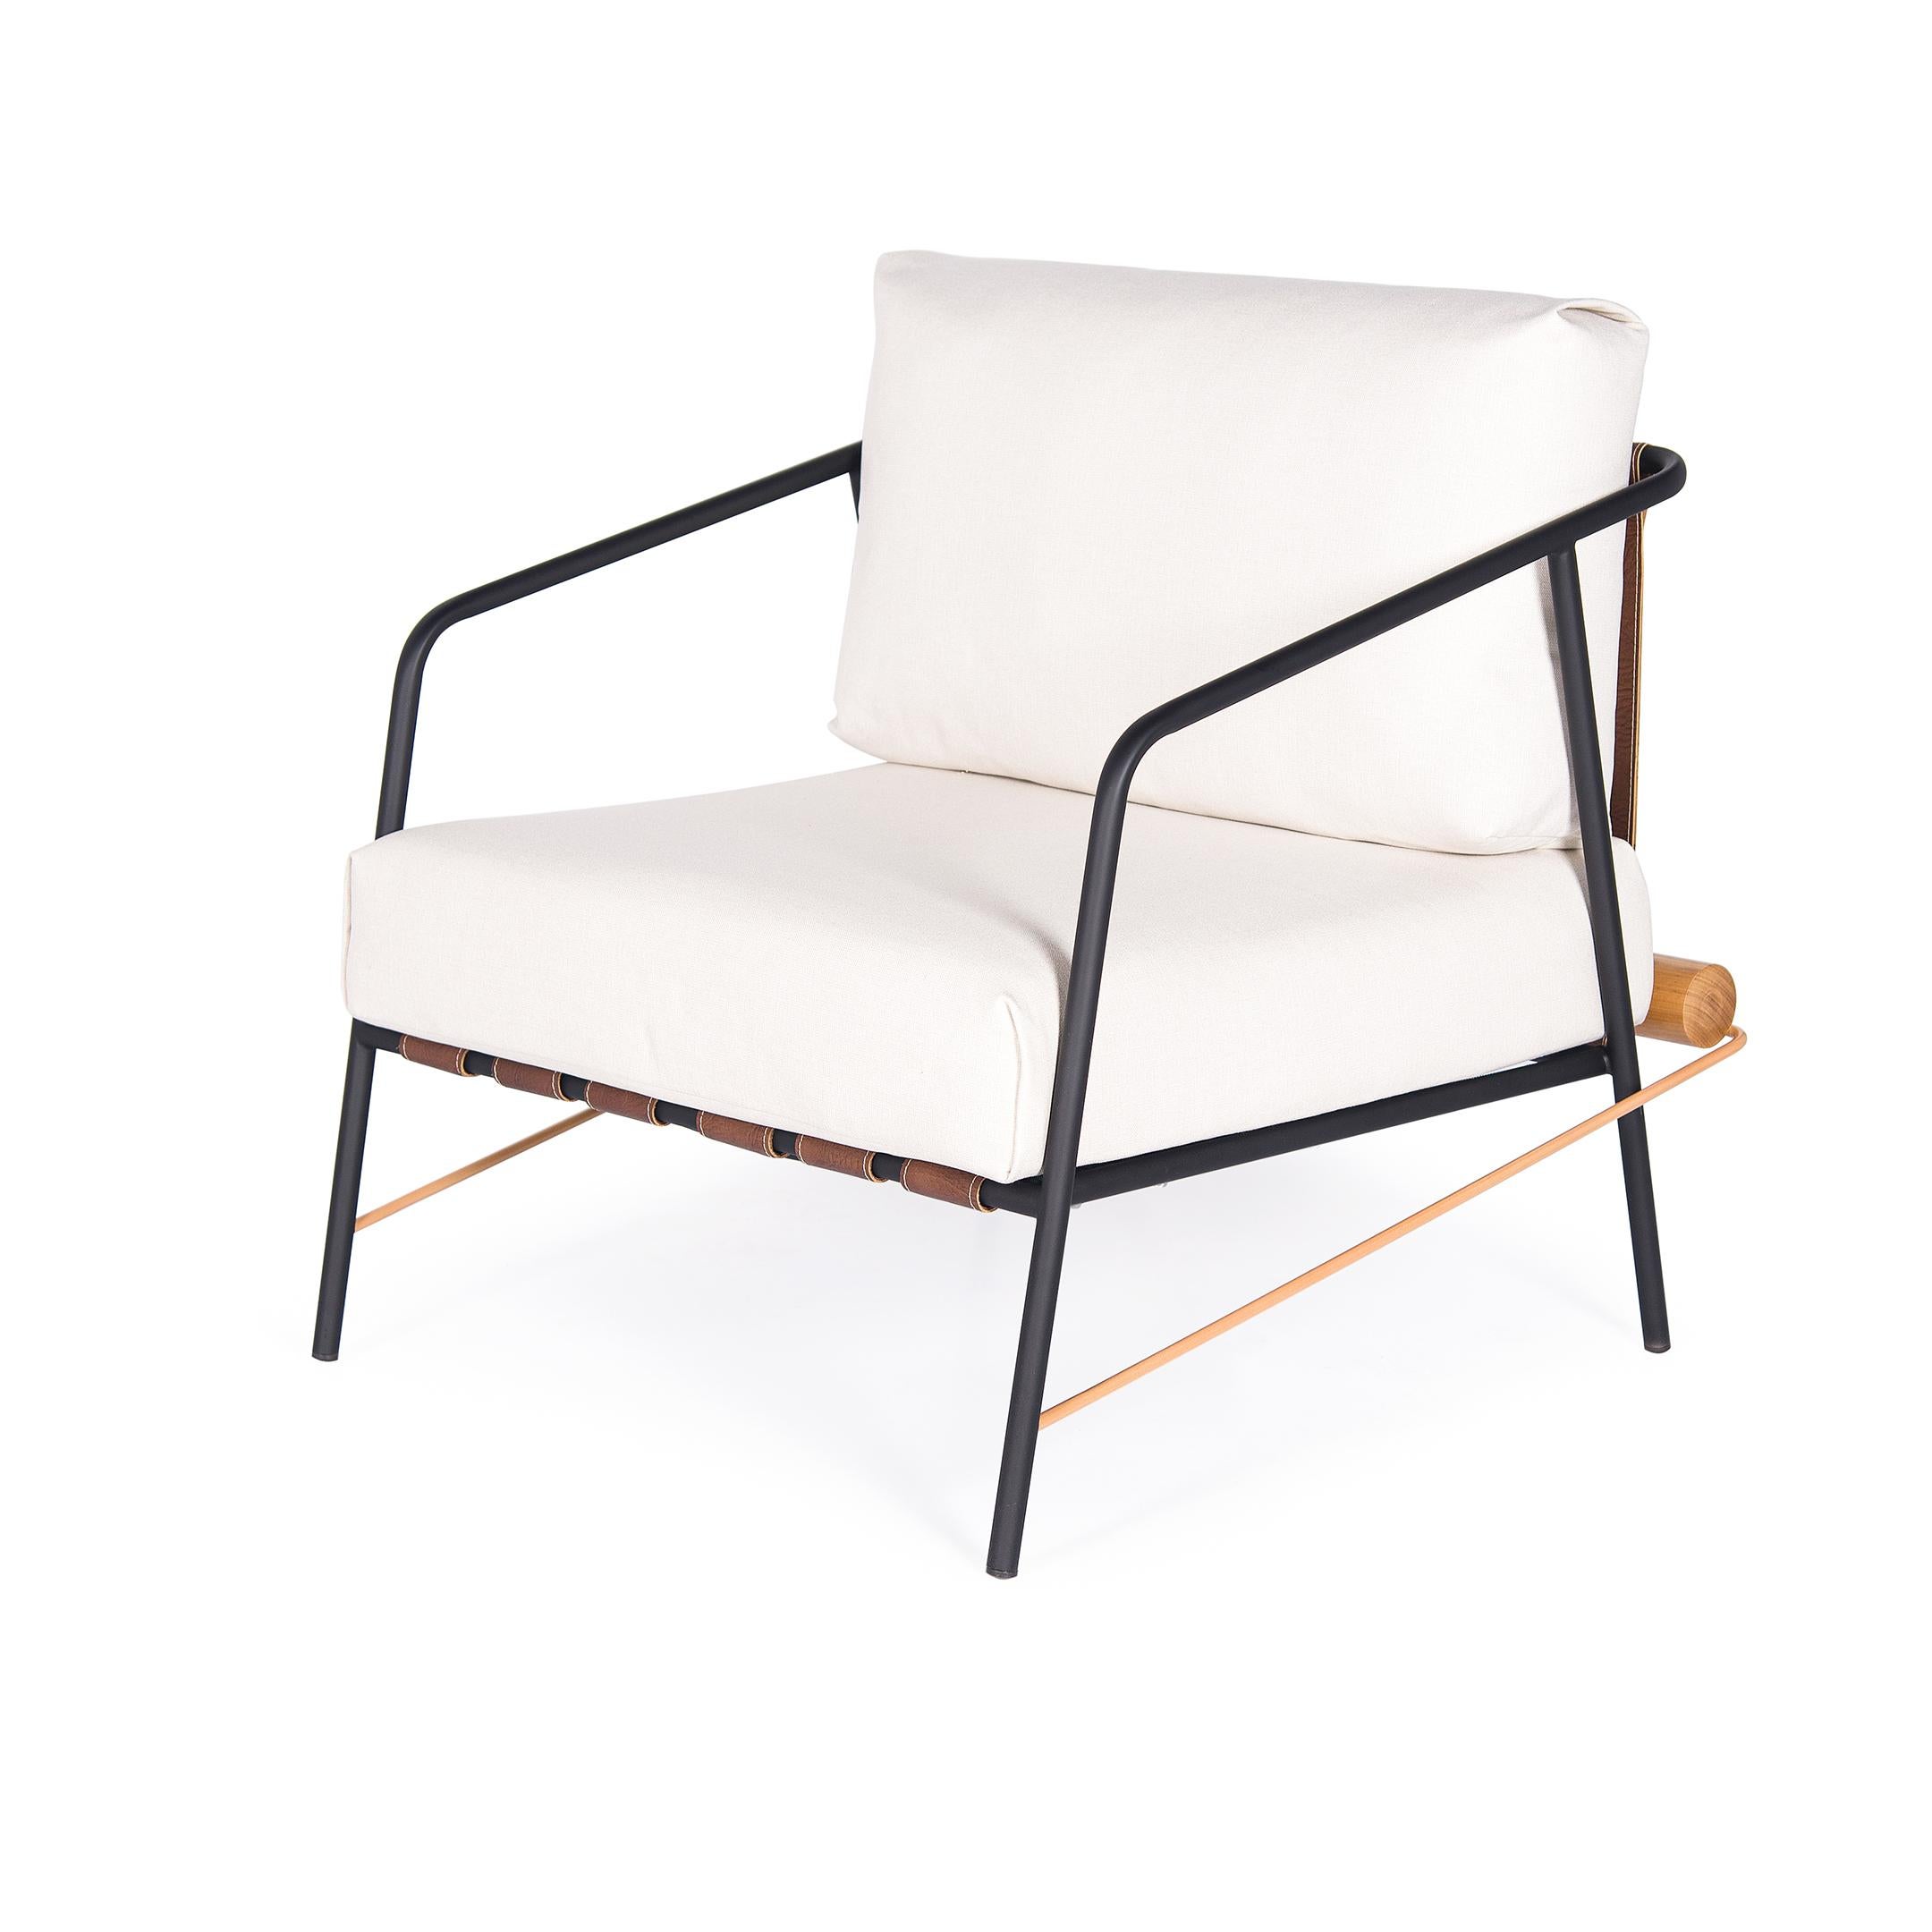 La structure du fauteuil OLAV est en acier au carbone dans le peint à l'encre noire, a un détail d'or mat au fond.
Il est muni d'élastiques de percussion à la base.
Le tissu d'ameublement qui peut être personnalisé (demander des informations).
Il